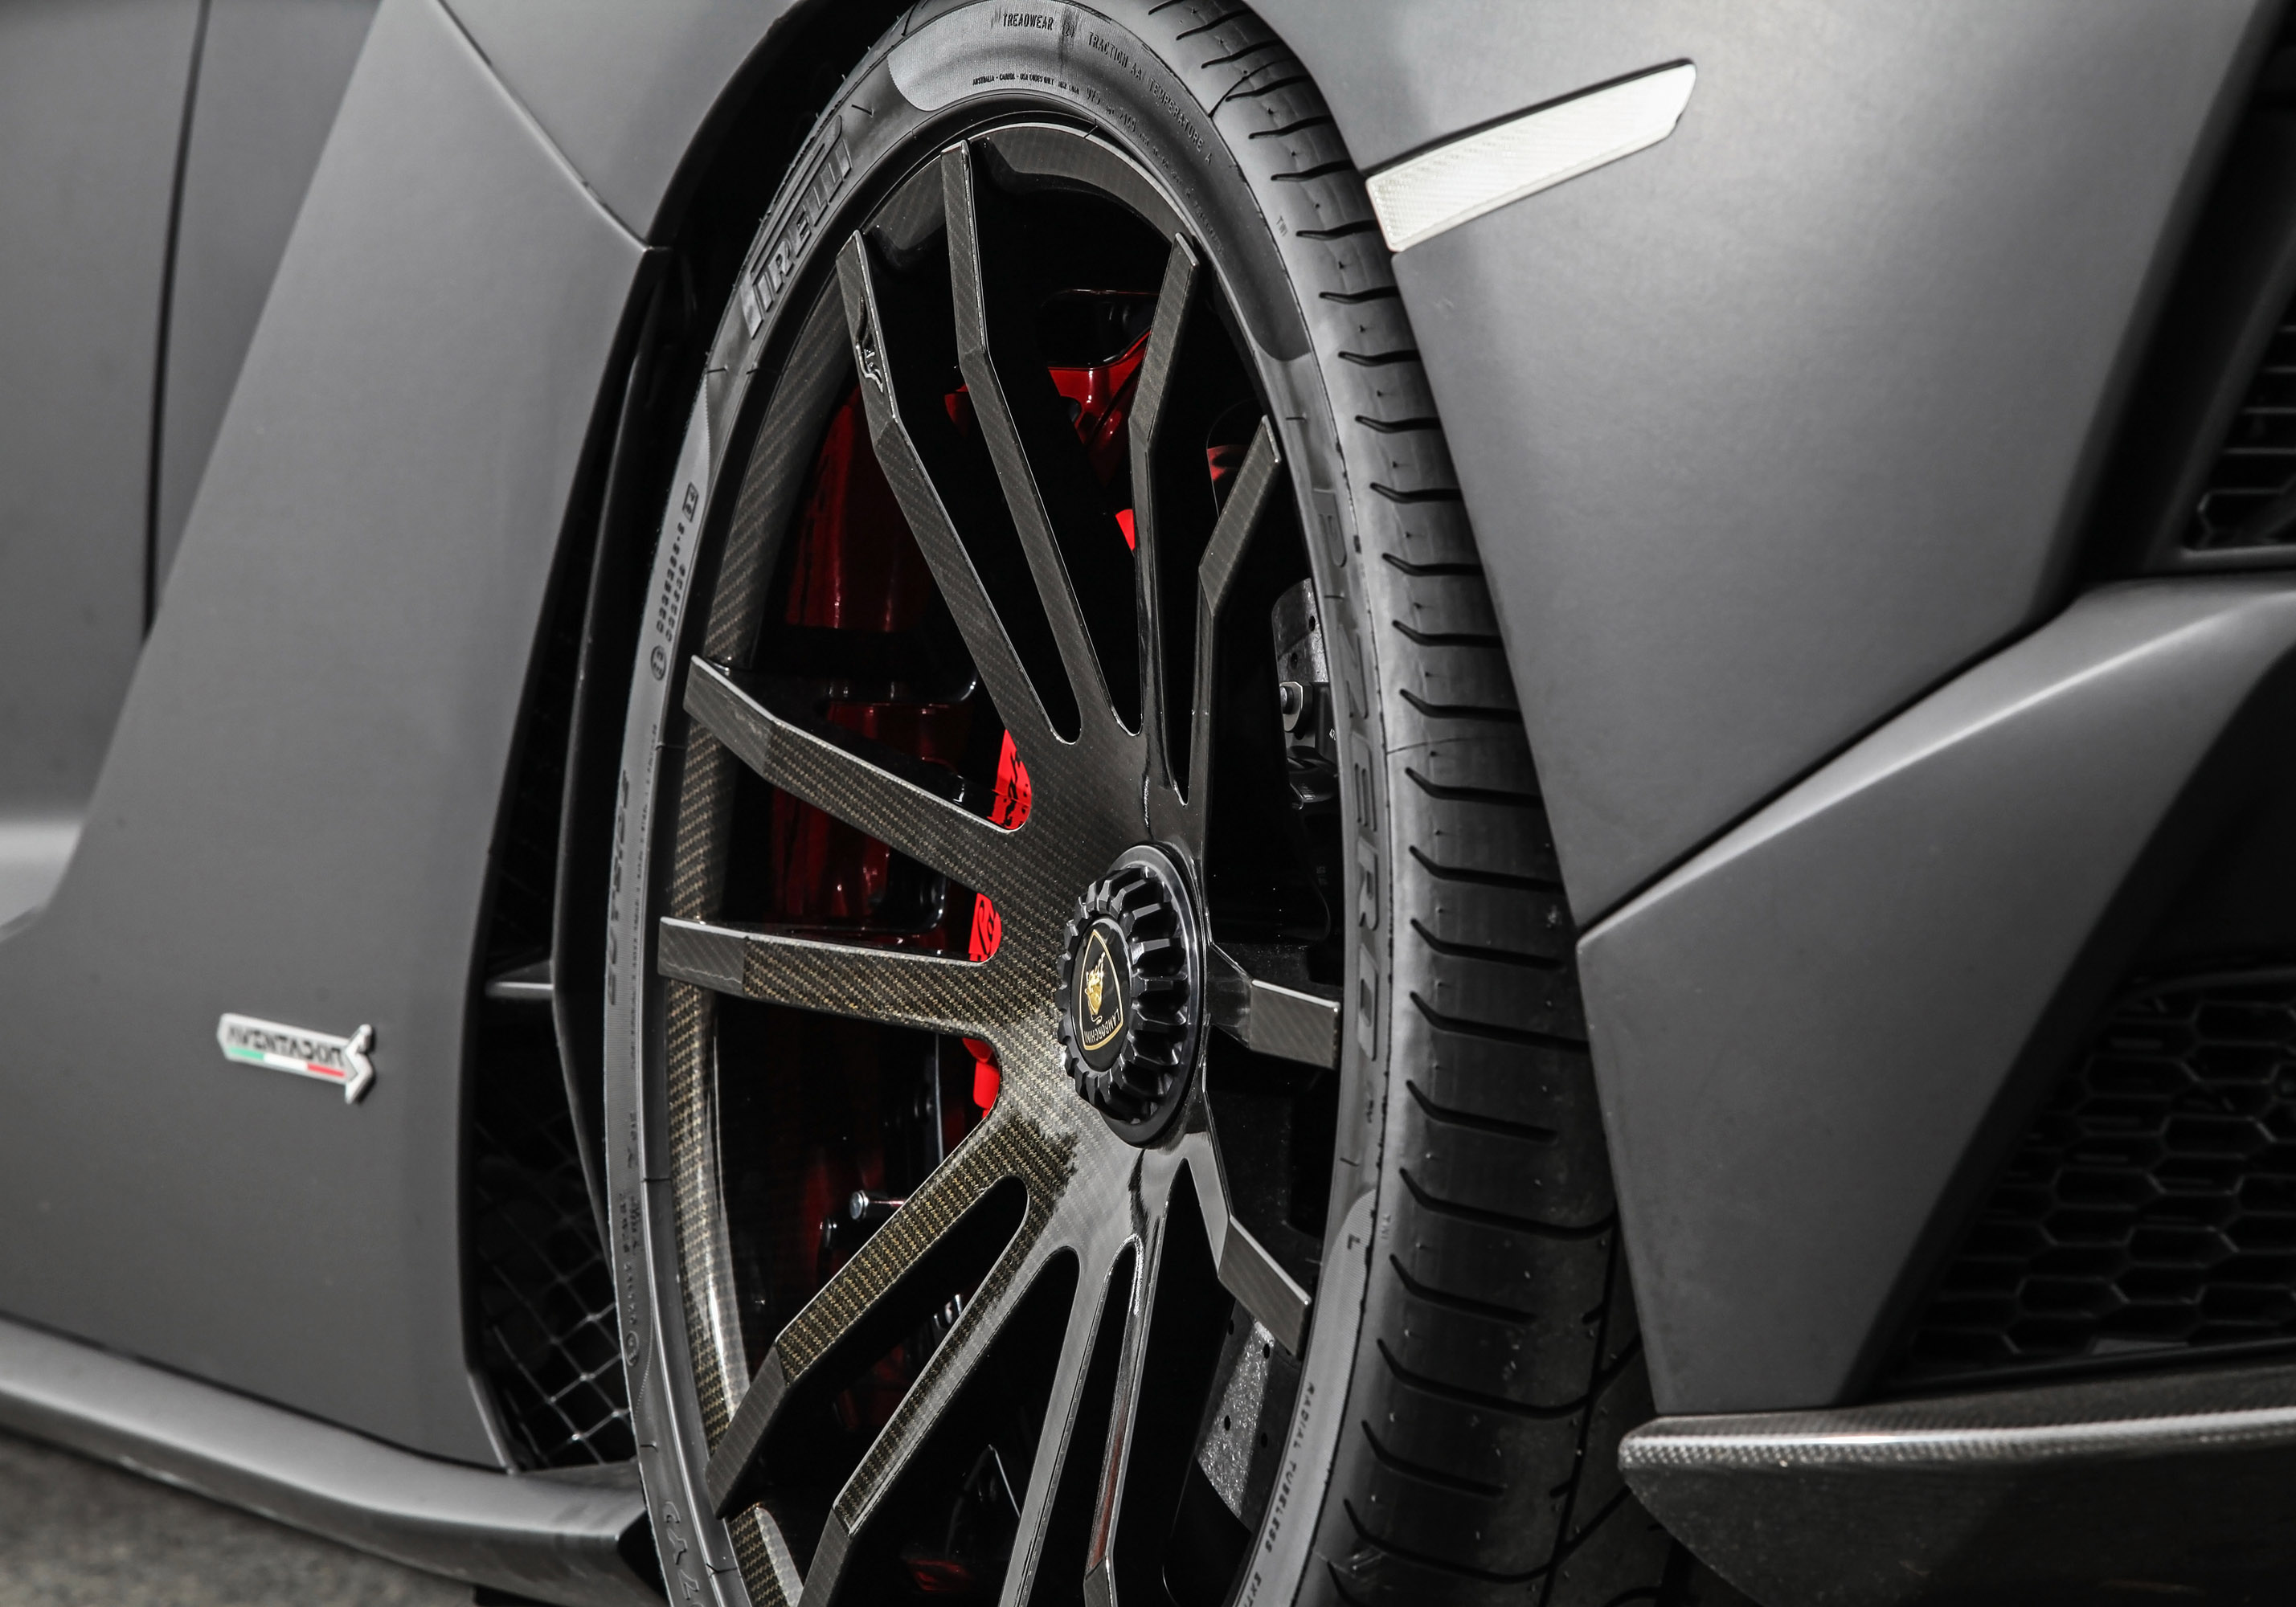 Кроме того, комплект колес был специально создан для Wheelsandmore – колеса получили покрытие, имитирующее карбон, и сделаны с размере 9x20 и 13,0x21 дюймов спереди и сзади соответственно, а также оснащены шинами Pirelli. Что касается системы трансми